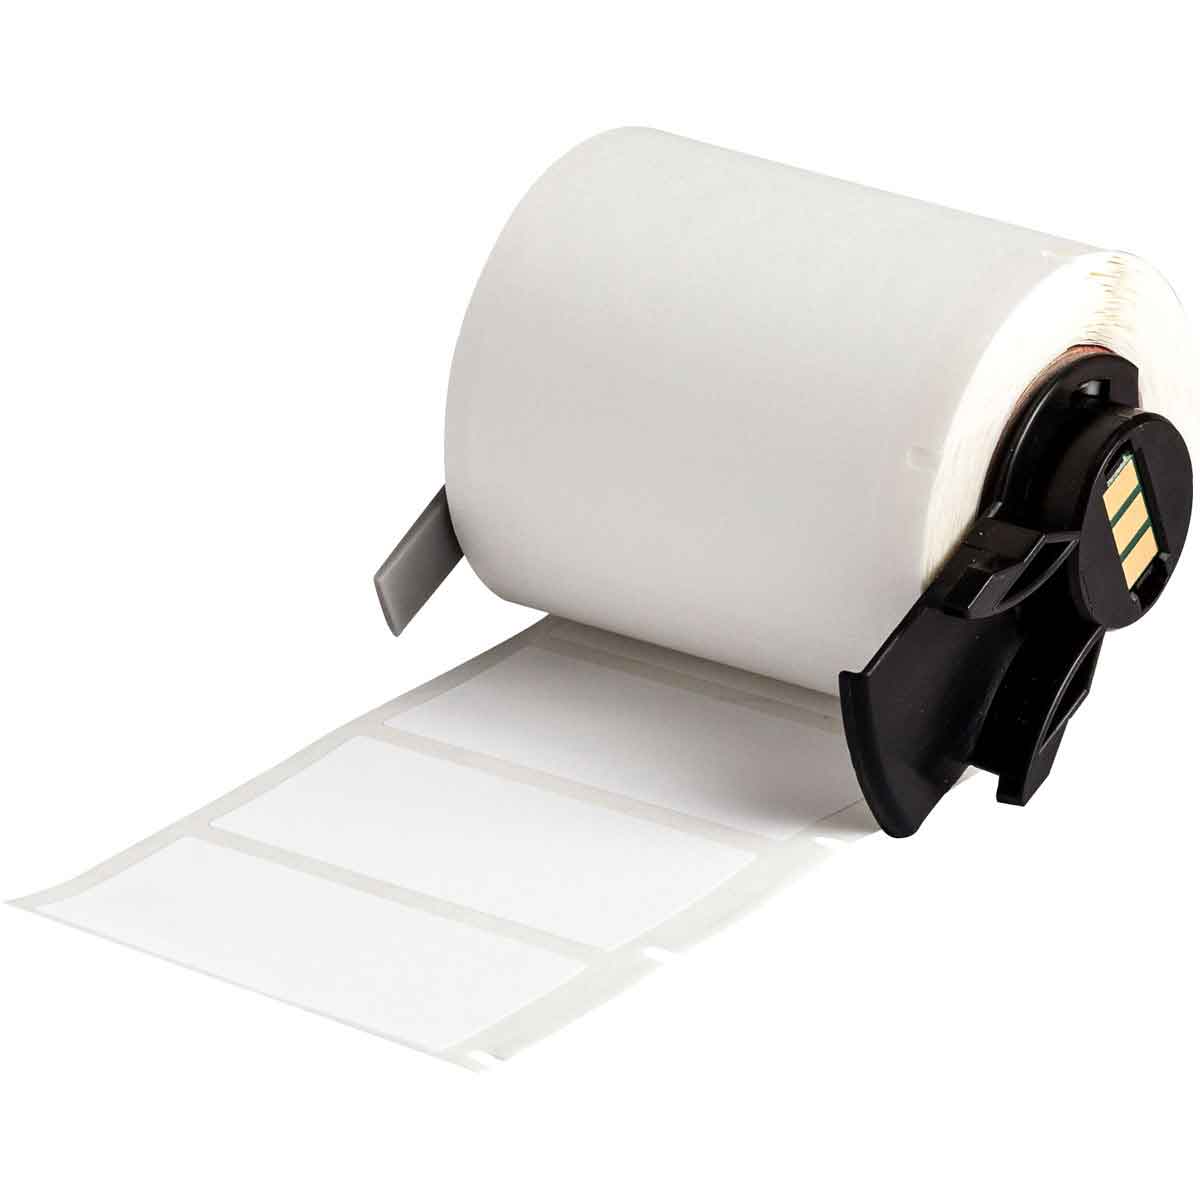 Étiquettes d'identification générale en polyester blanc mat pour étiqueteuses BMP61, M611 et TLS2200